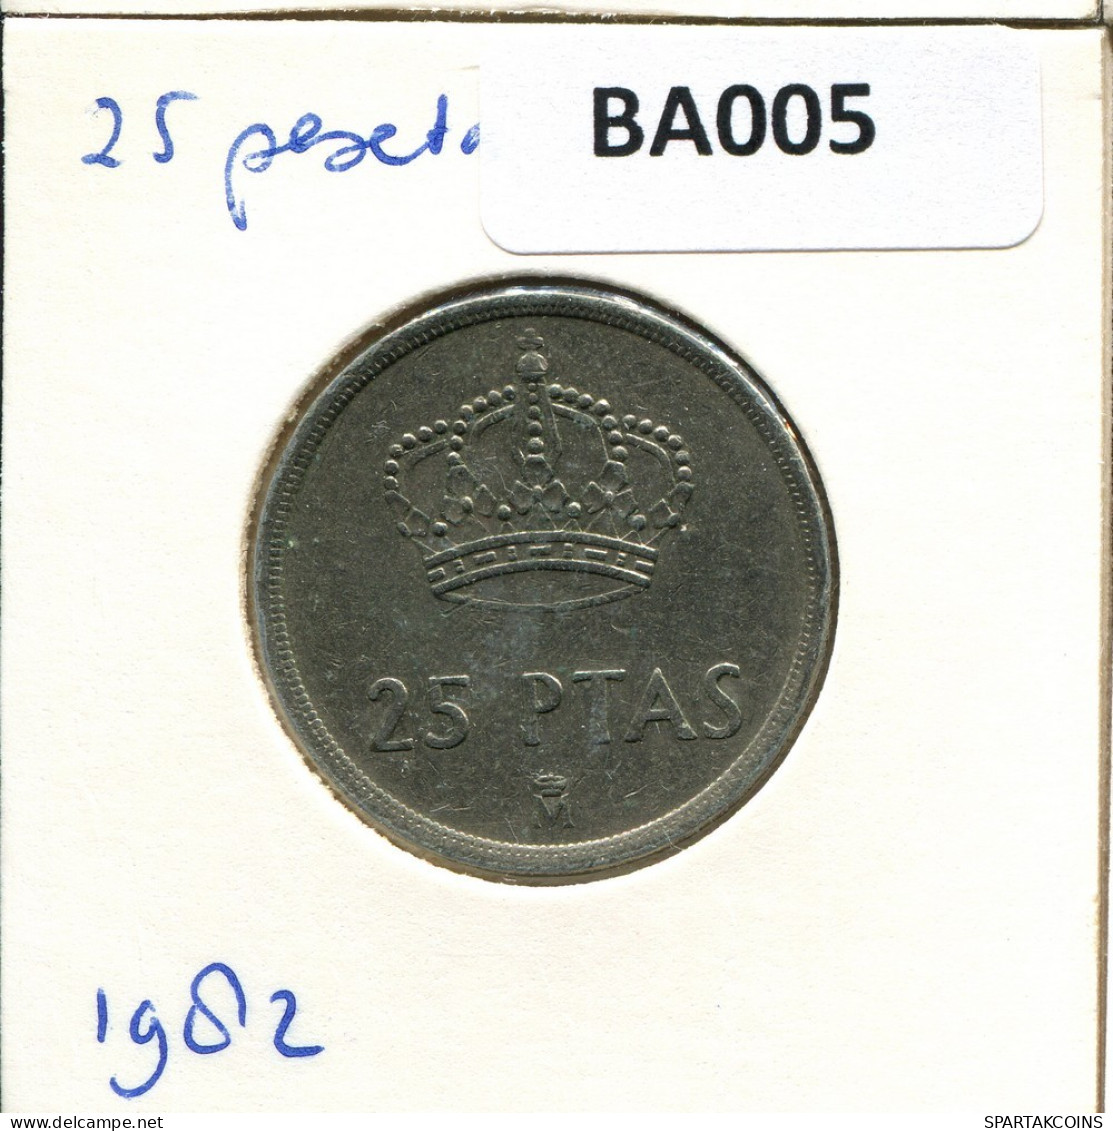 25 PESETAS 1982 SPAIN Coin #BA005.U.A - 25 Pesetas